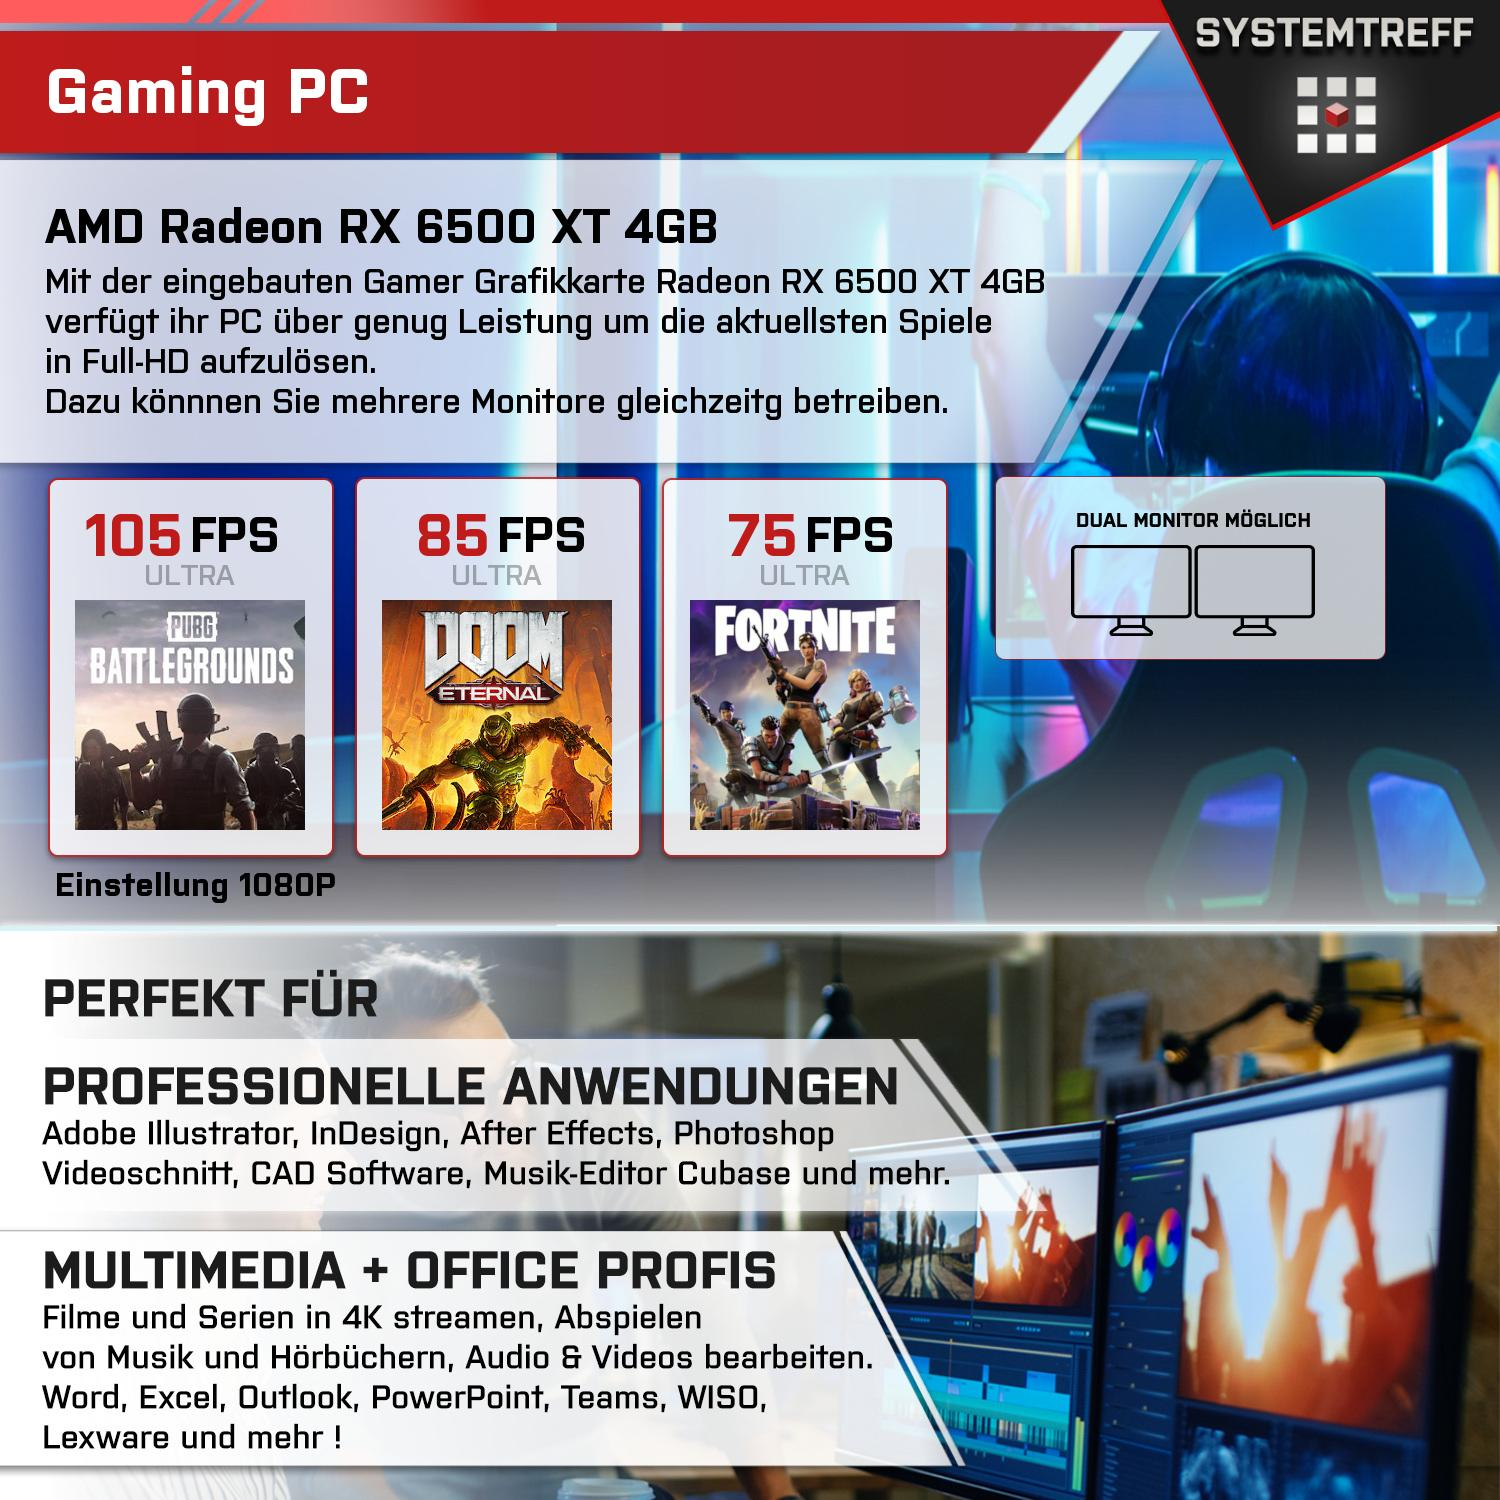 SYSTEMTREFF Gaming Komplett AMD 5 5500 RAM, GB Komplett Prozessor, XT PC AMD 4 mit 6500 4GB, GB RX 5500, mSSD, 512 Radeon GB 16 Ryzen